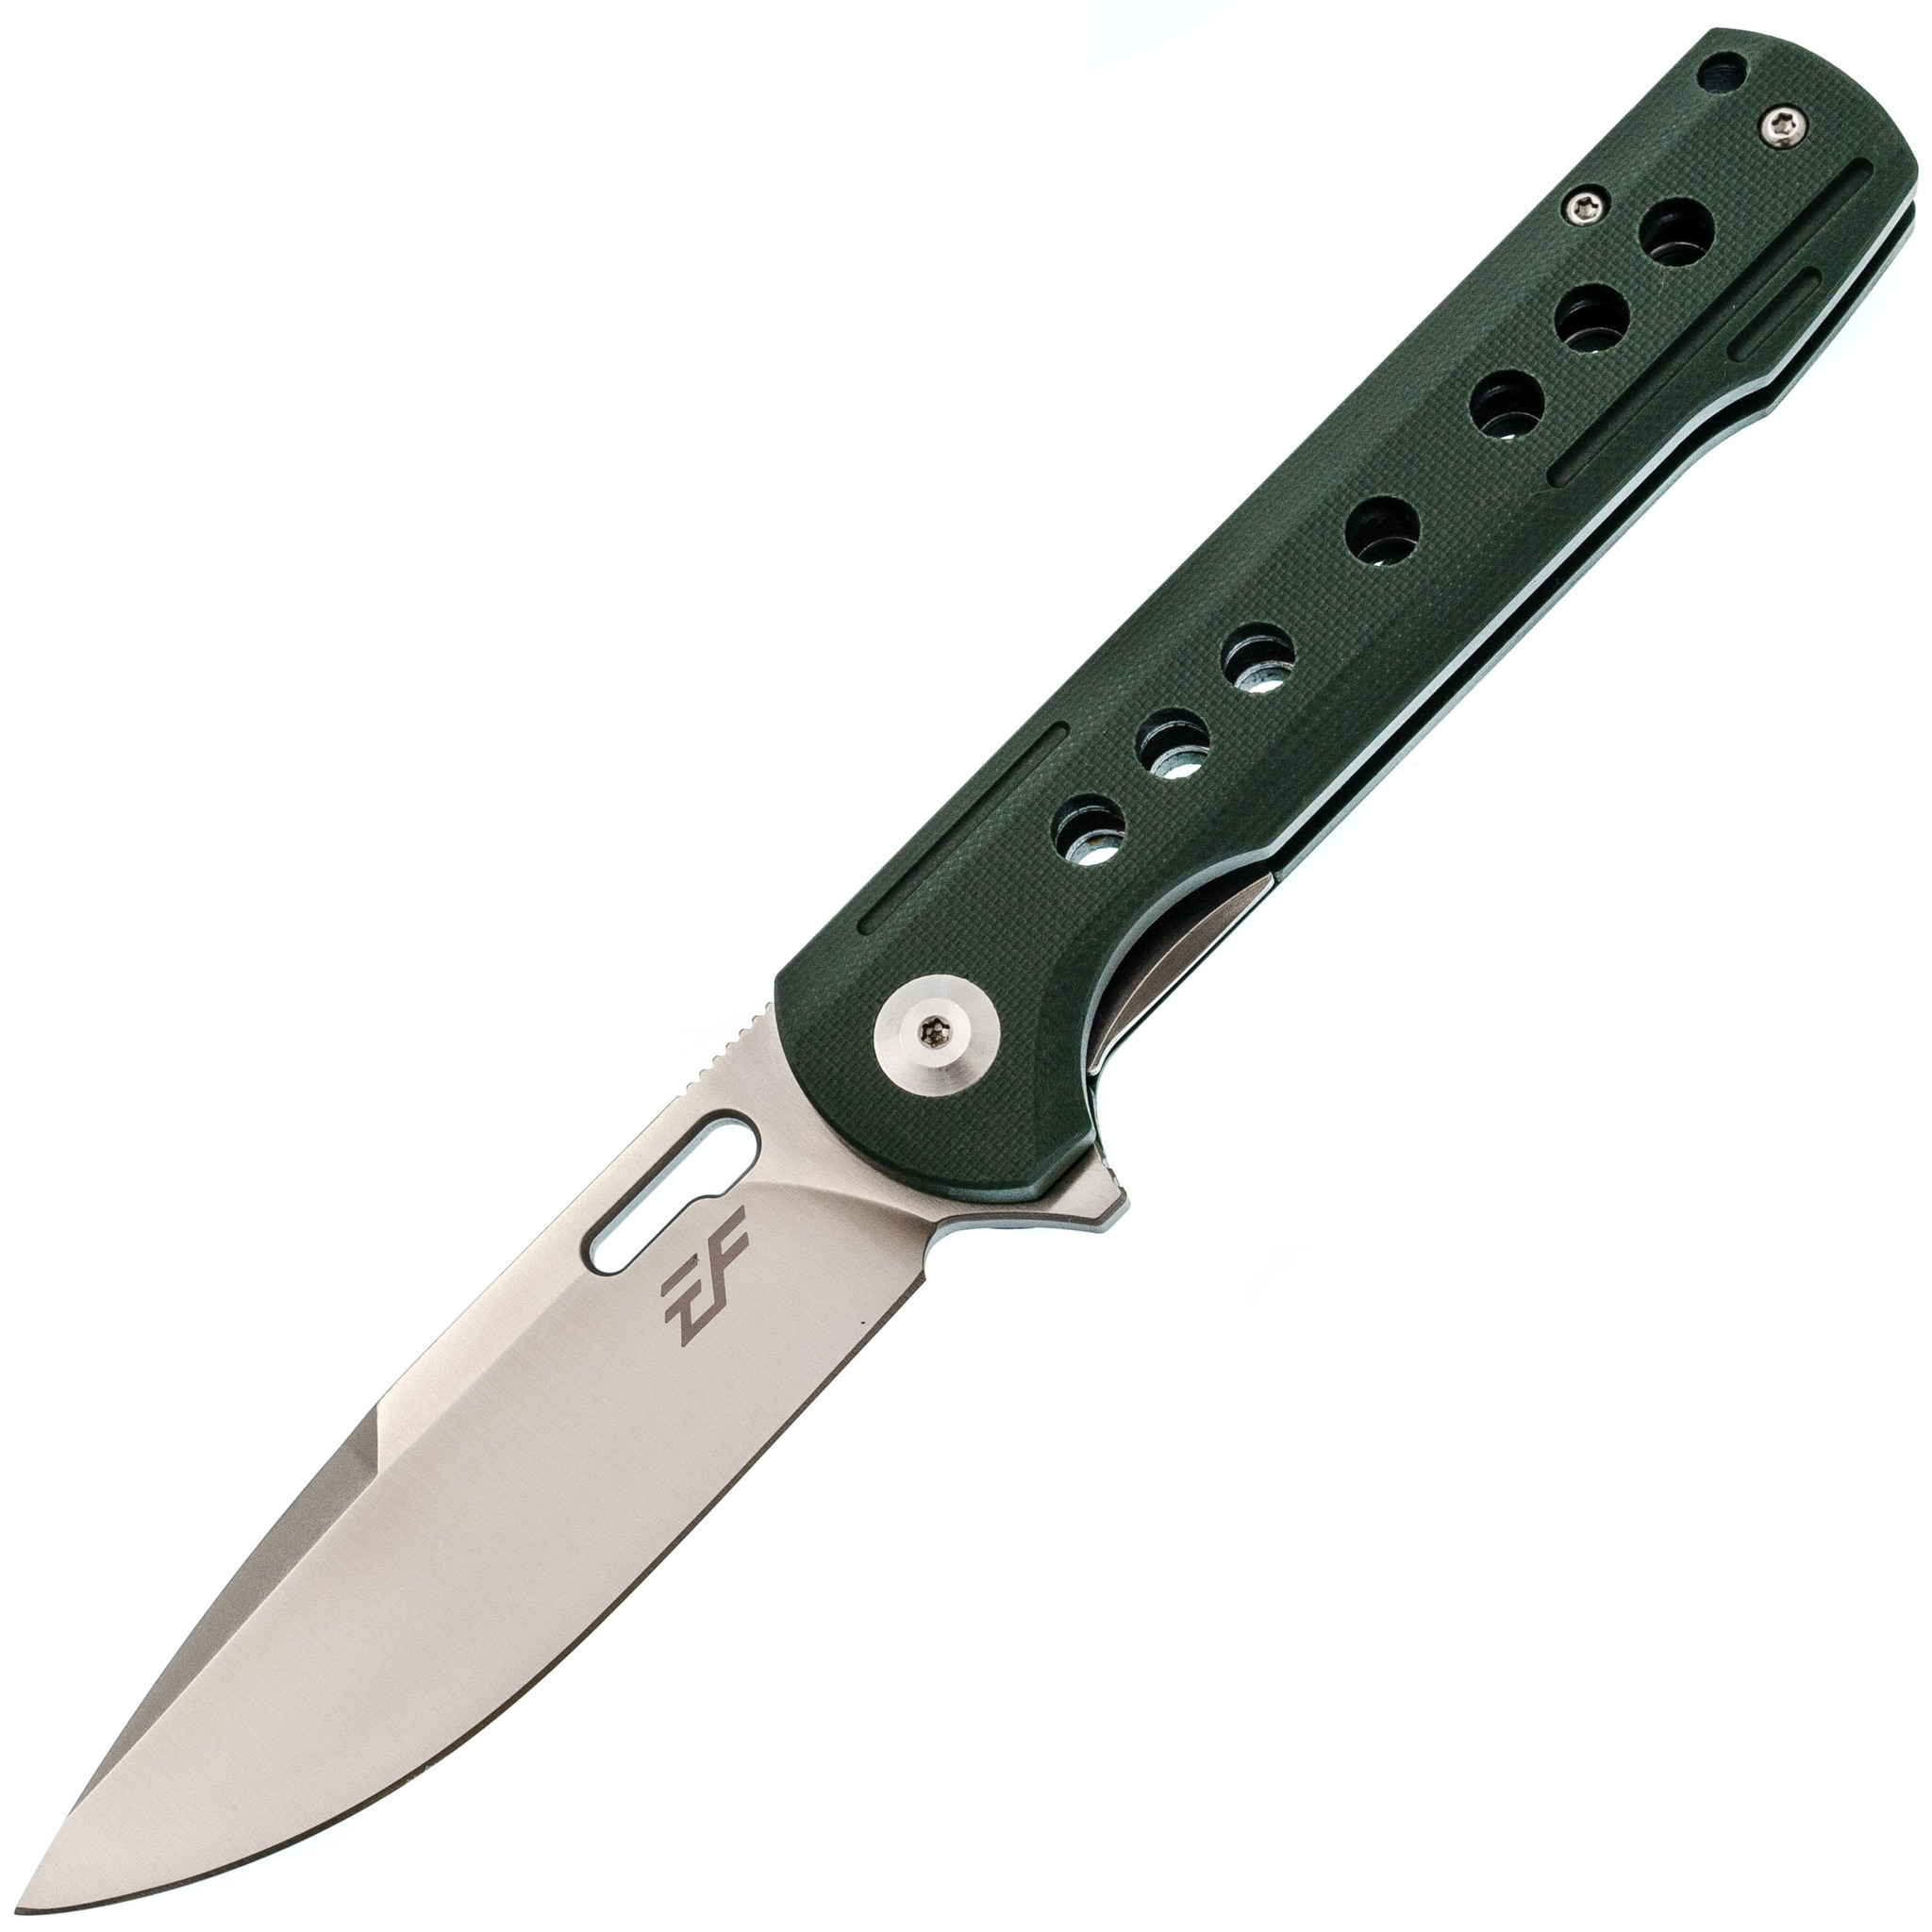 Складной нож Eafengrow EF910 Green, сталь D2, рукоять G10 складной тактический нож punisher green